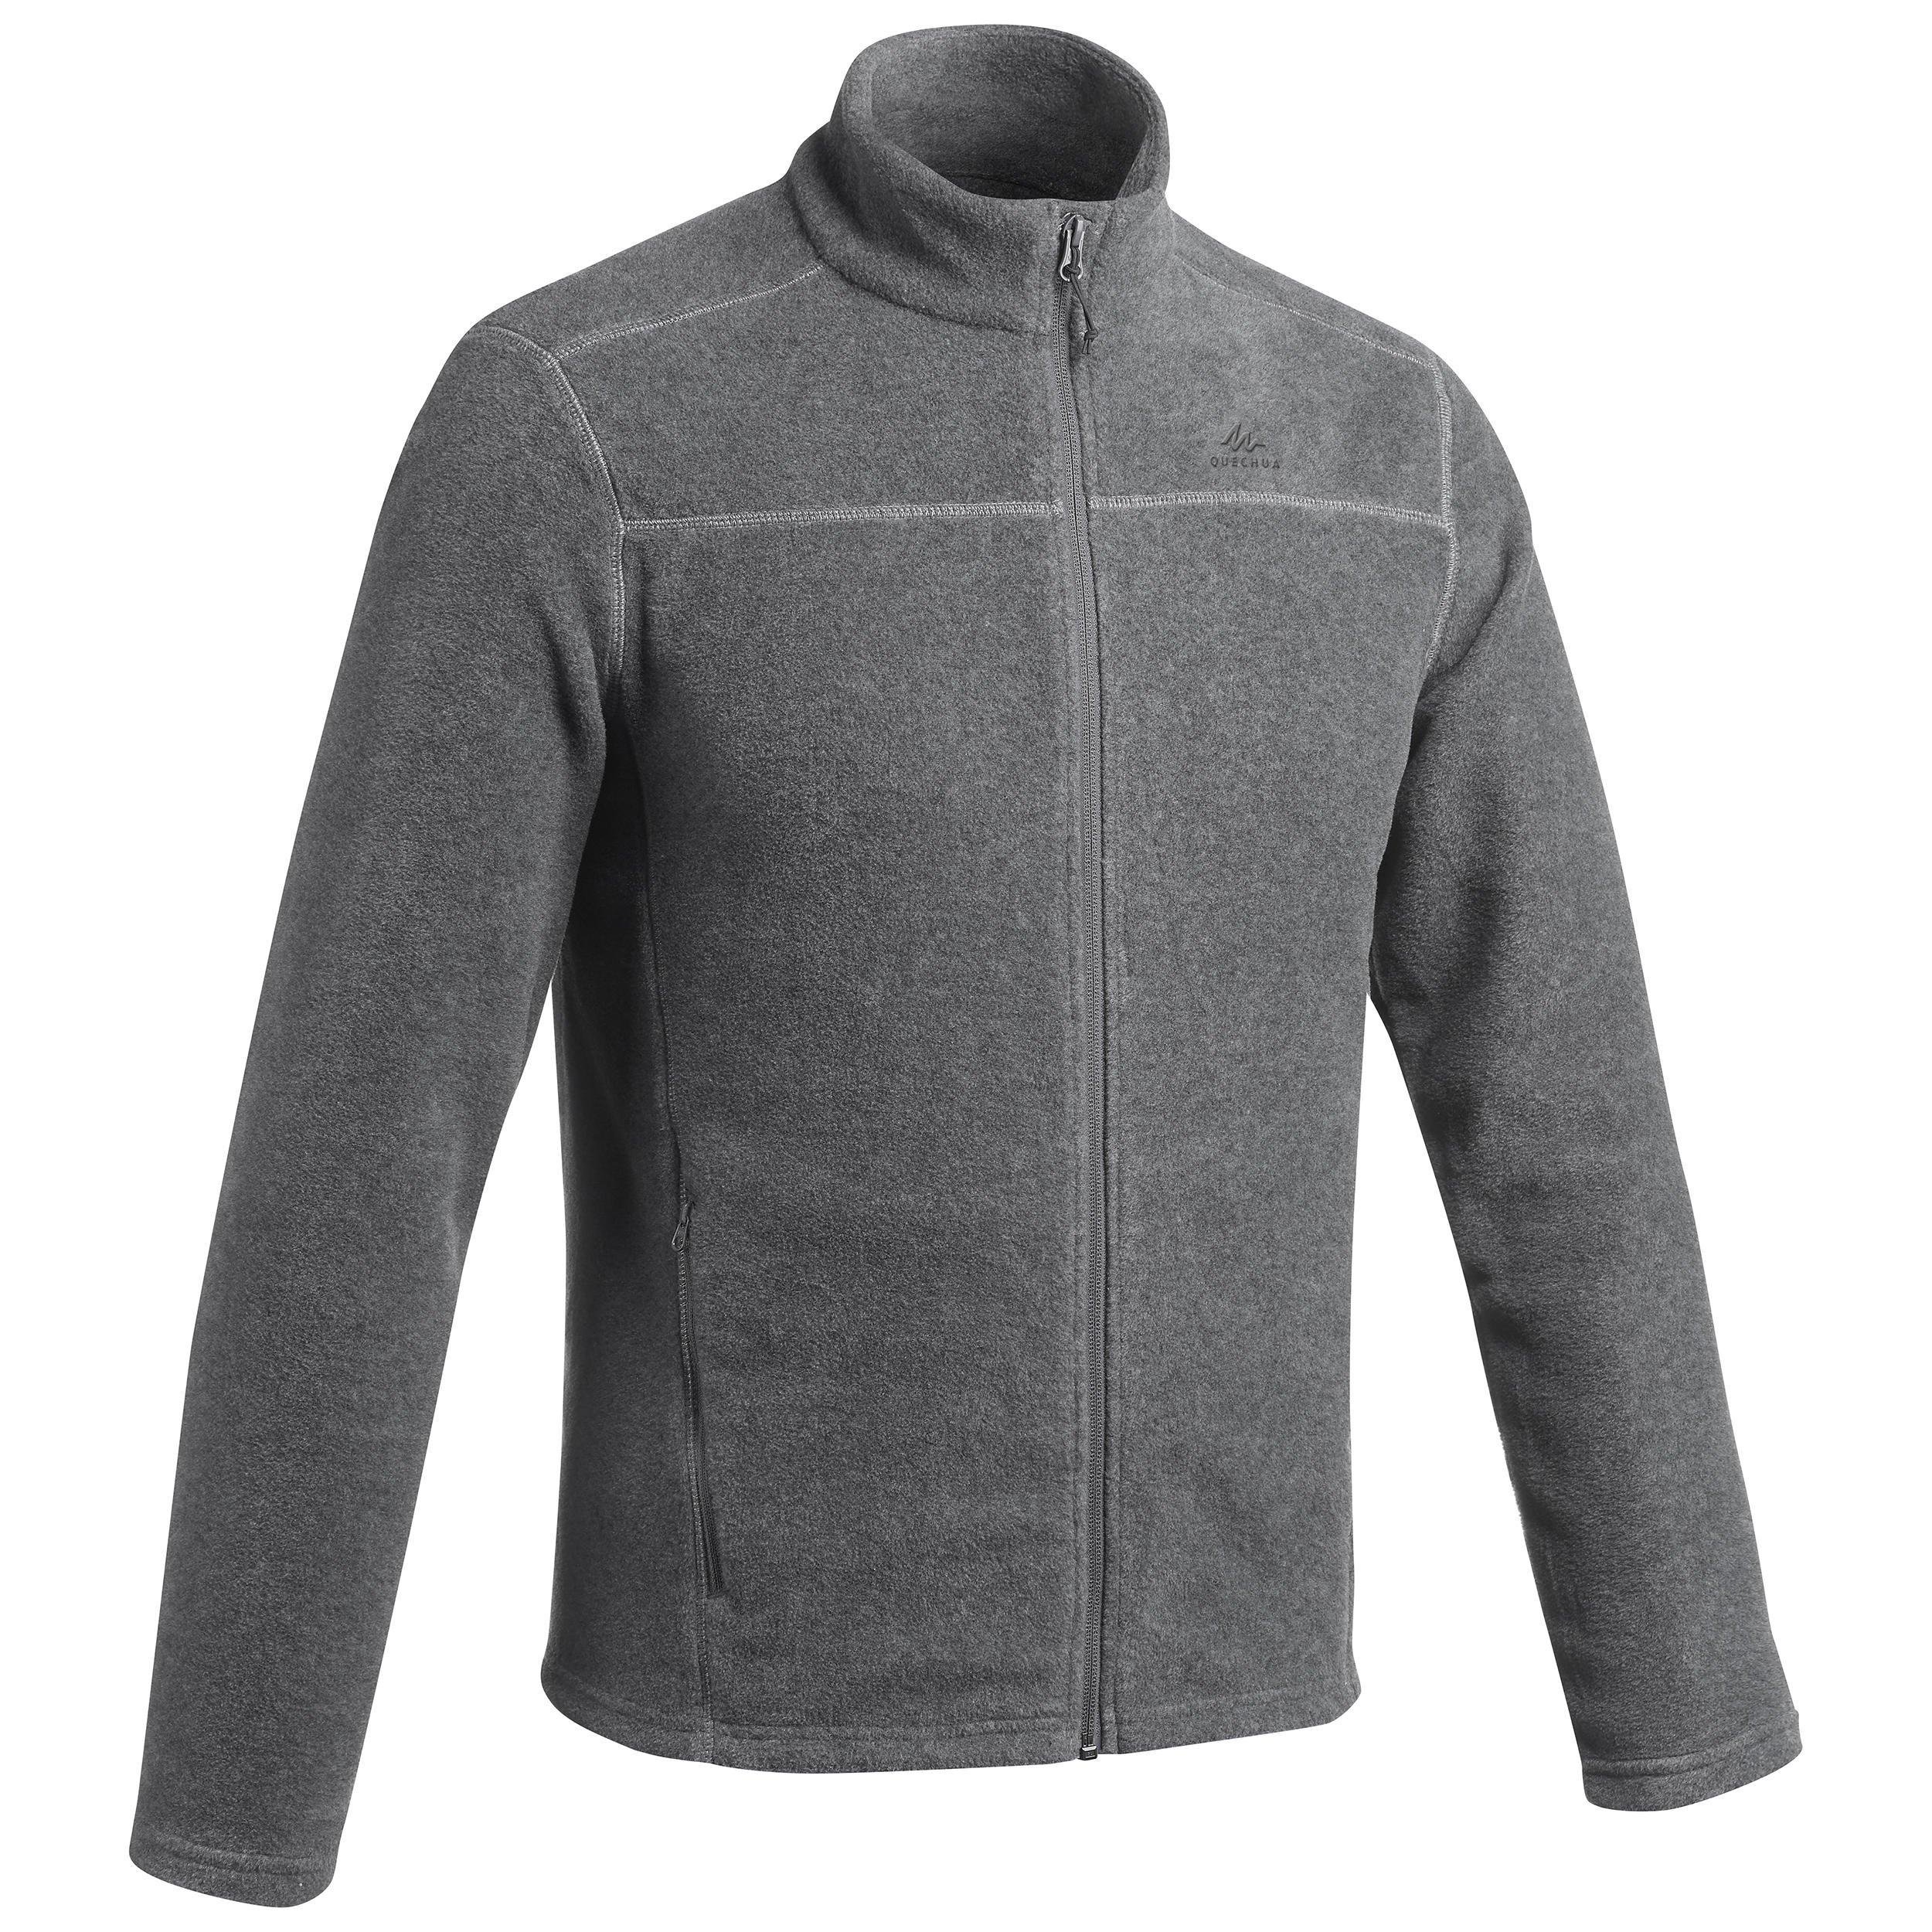 Buy Mens Hiking Fleece Jacket Grey Online | Decathlon